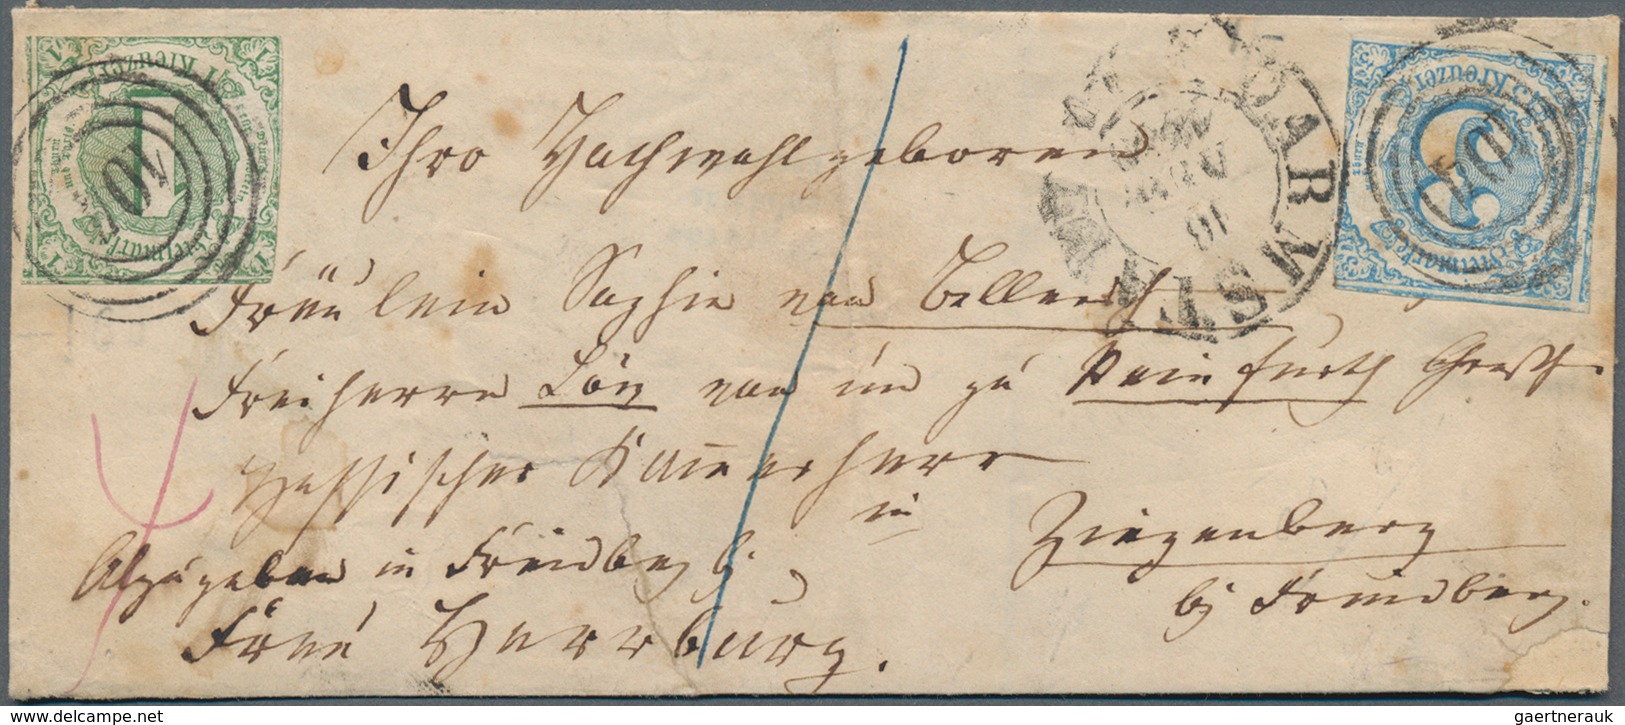 Thurn & Taxis - Marken und Briefe: 1794/1874, liebevoll gestaltete Sammlung im 10 Klemmbindern. Enth